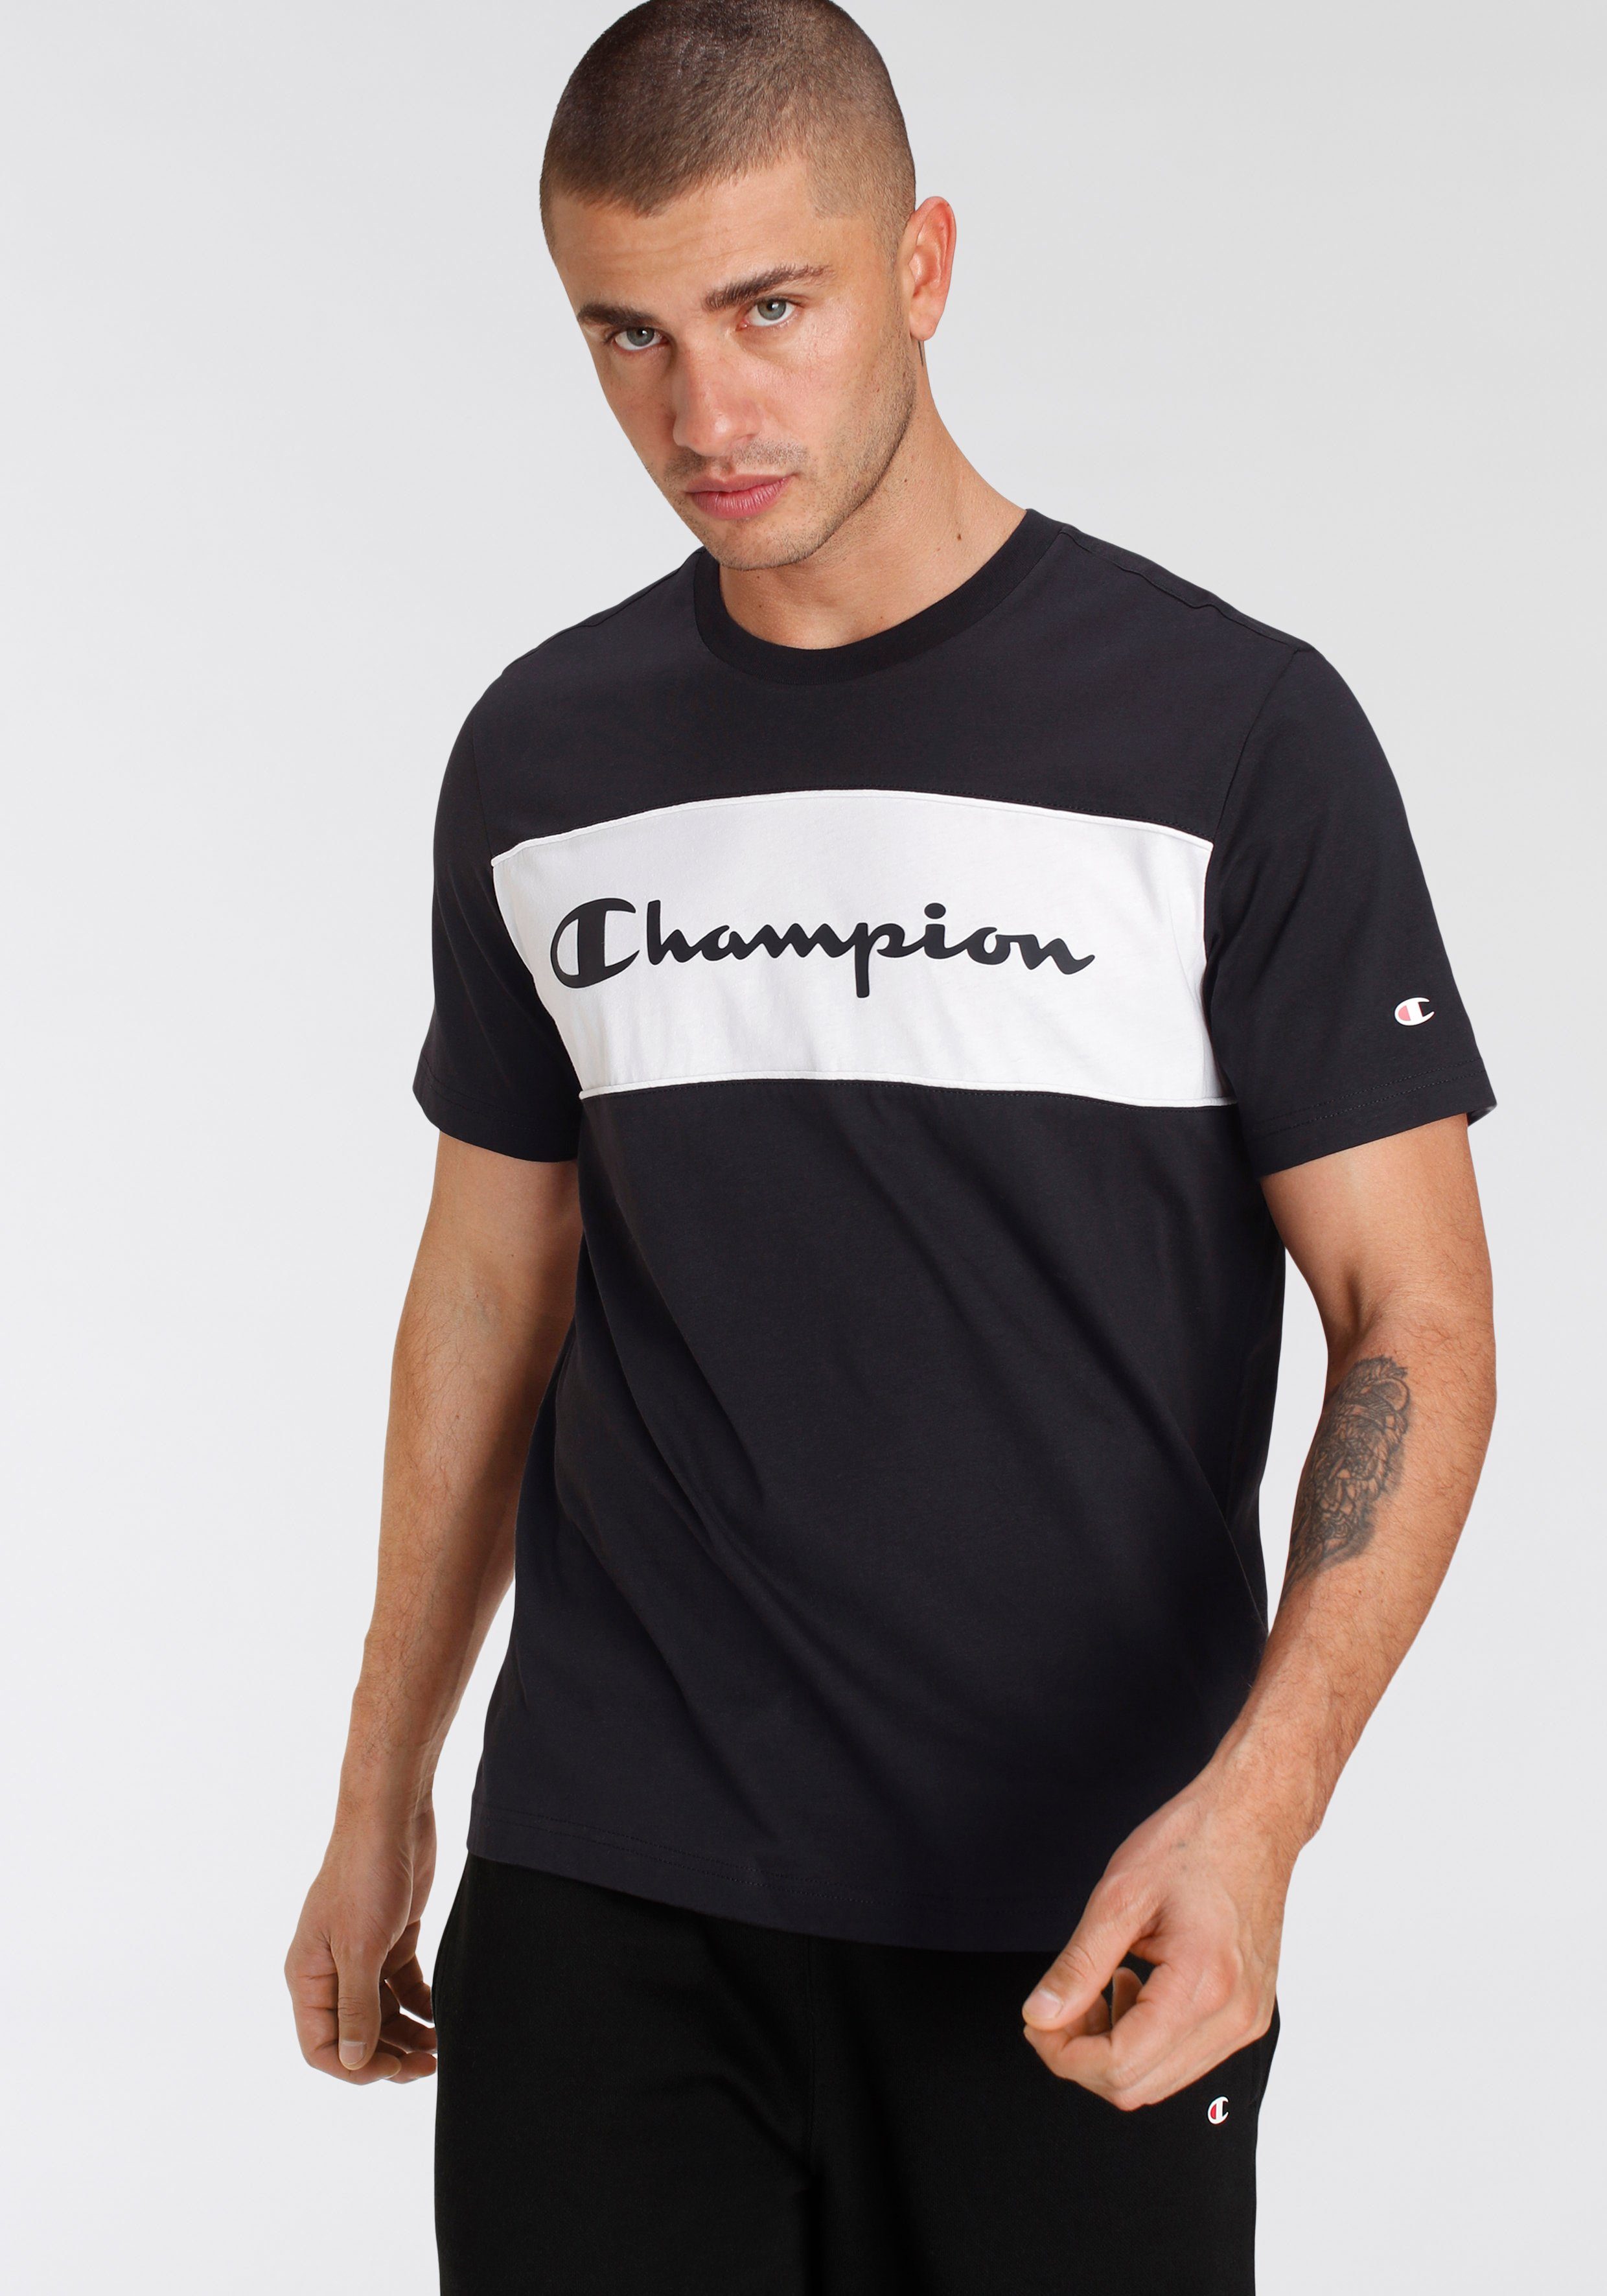 Champion T-Shirt online kaufen | OTTO